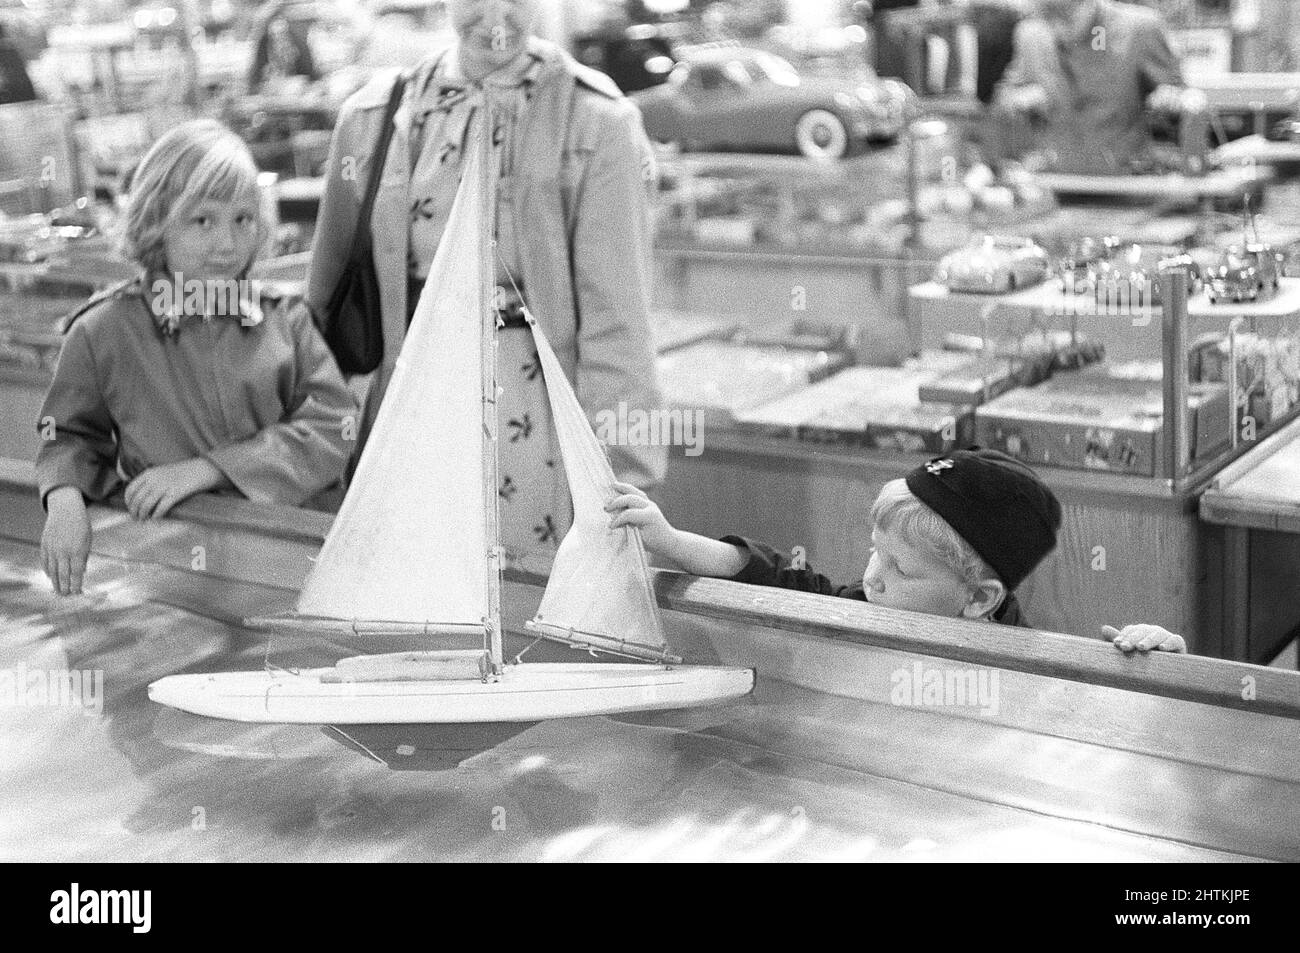 Jouets dans le 1950s. Dans un grand magasin un garçon est curieux de la belle maquette de voilier flottant dans l'eau et la touche. Suède 1954 Kristoffersson réf. 2A-33 Banque D'Images